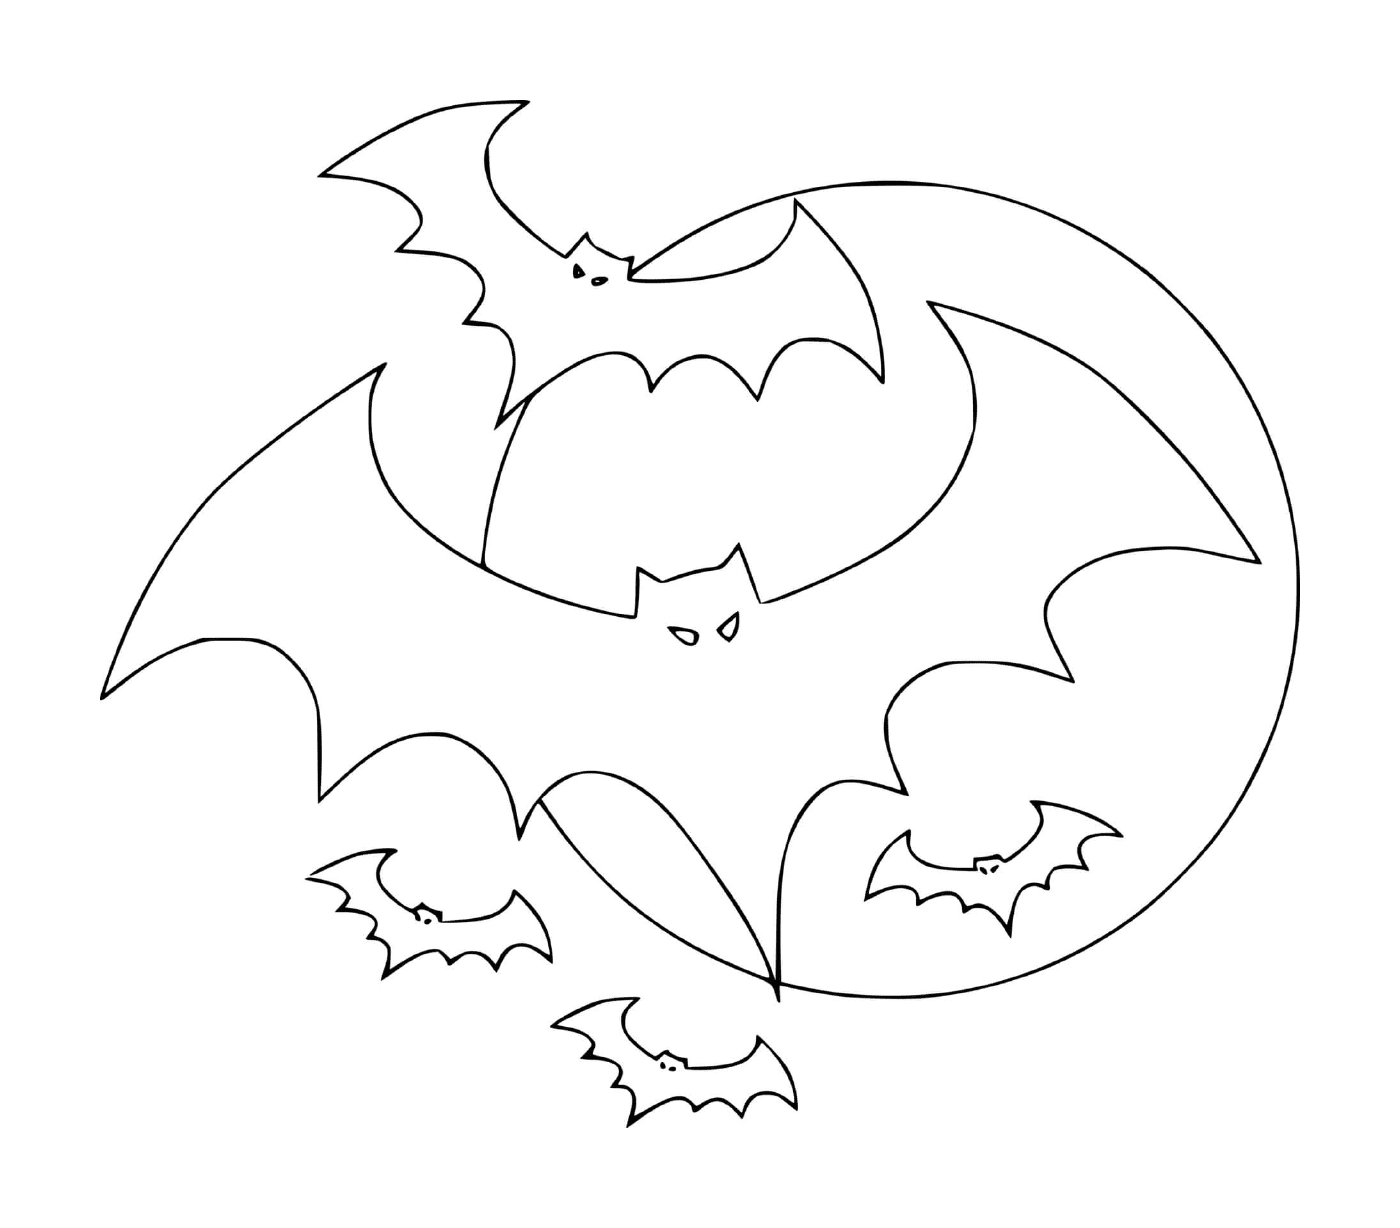  several bats in flight 